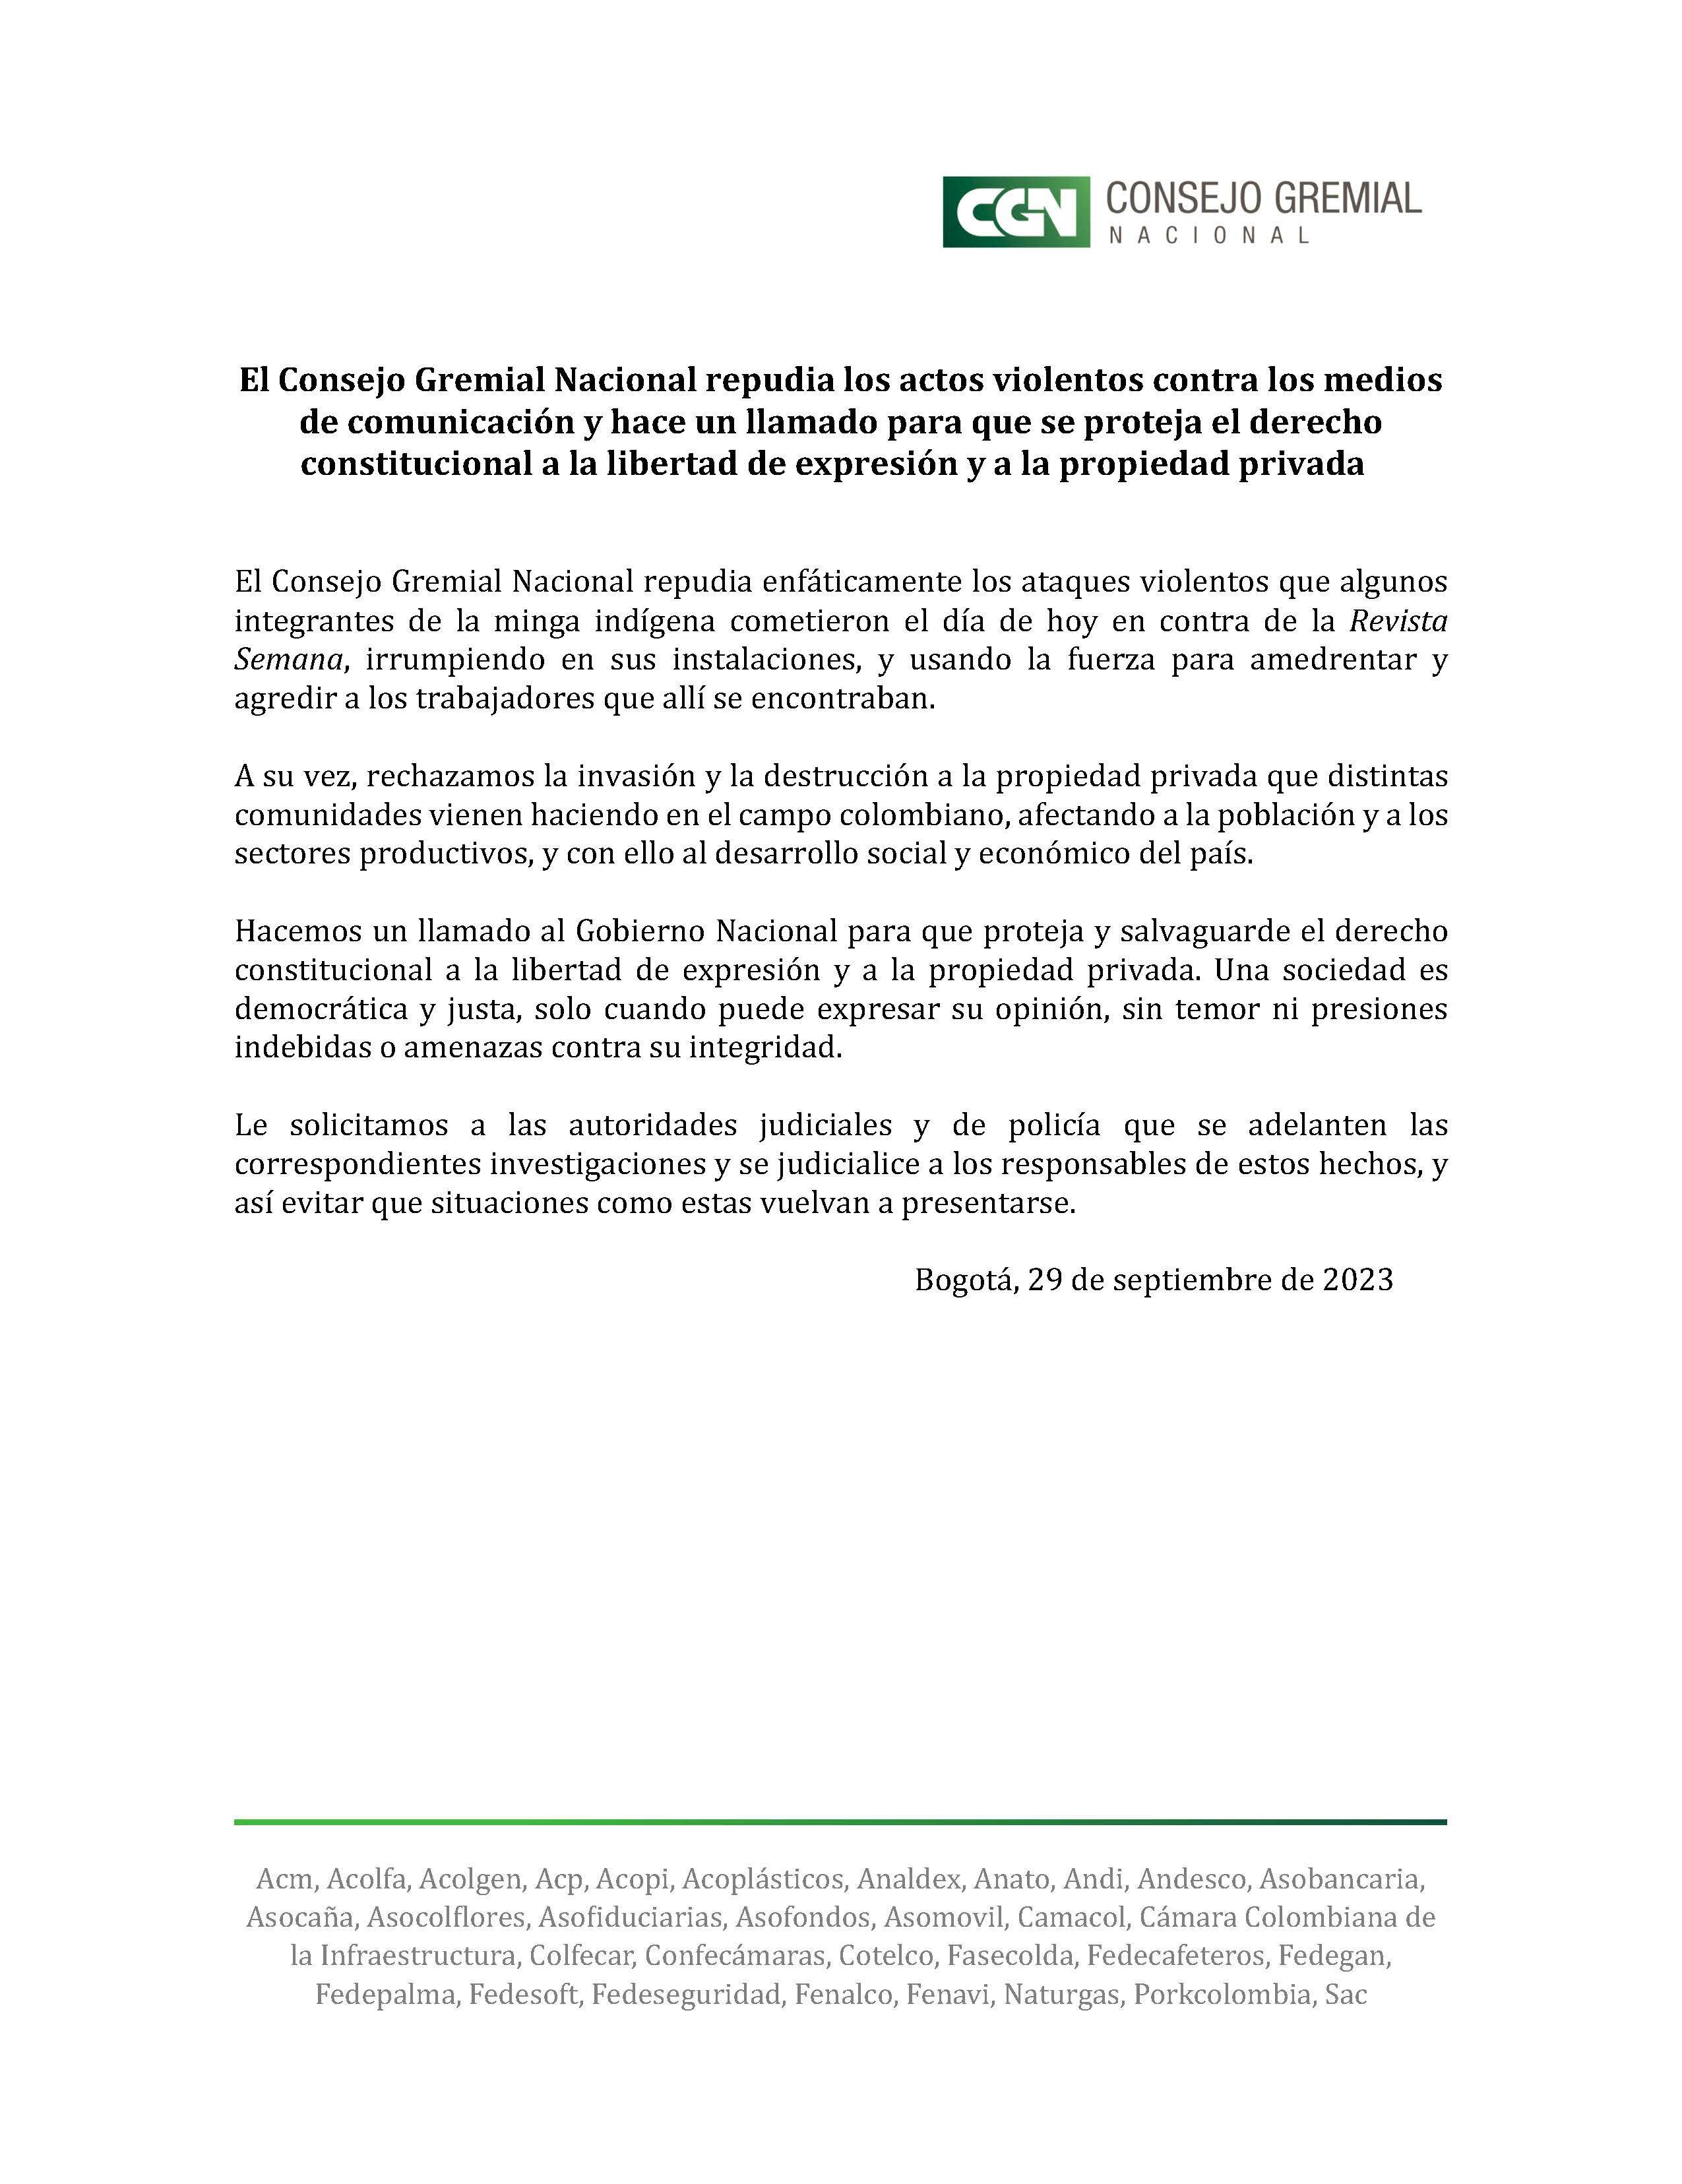 El Consejo Gremial rechazó los ataques a la revista Semana y la invasión a las oficinas en Bogotá - crédito Consejo Gremial